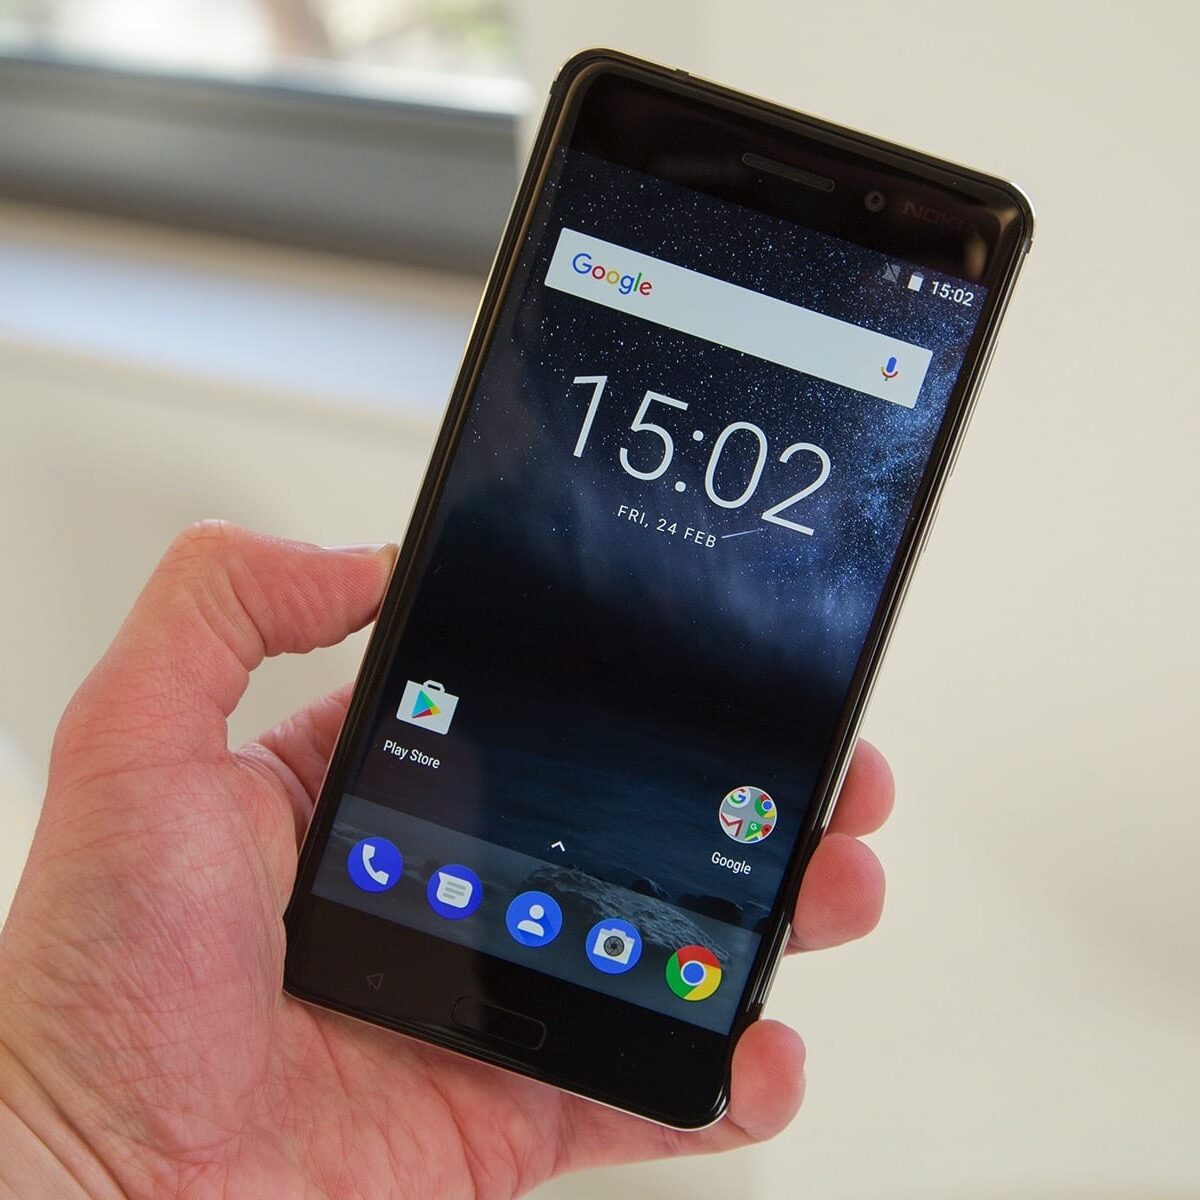 Celular clássico da Nokia voltará repaginado - e com jogo da cobrinha / X